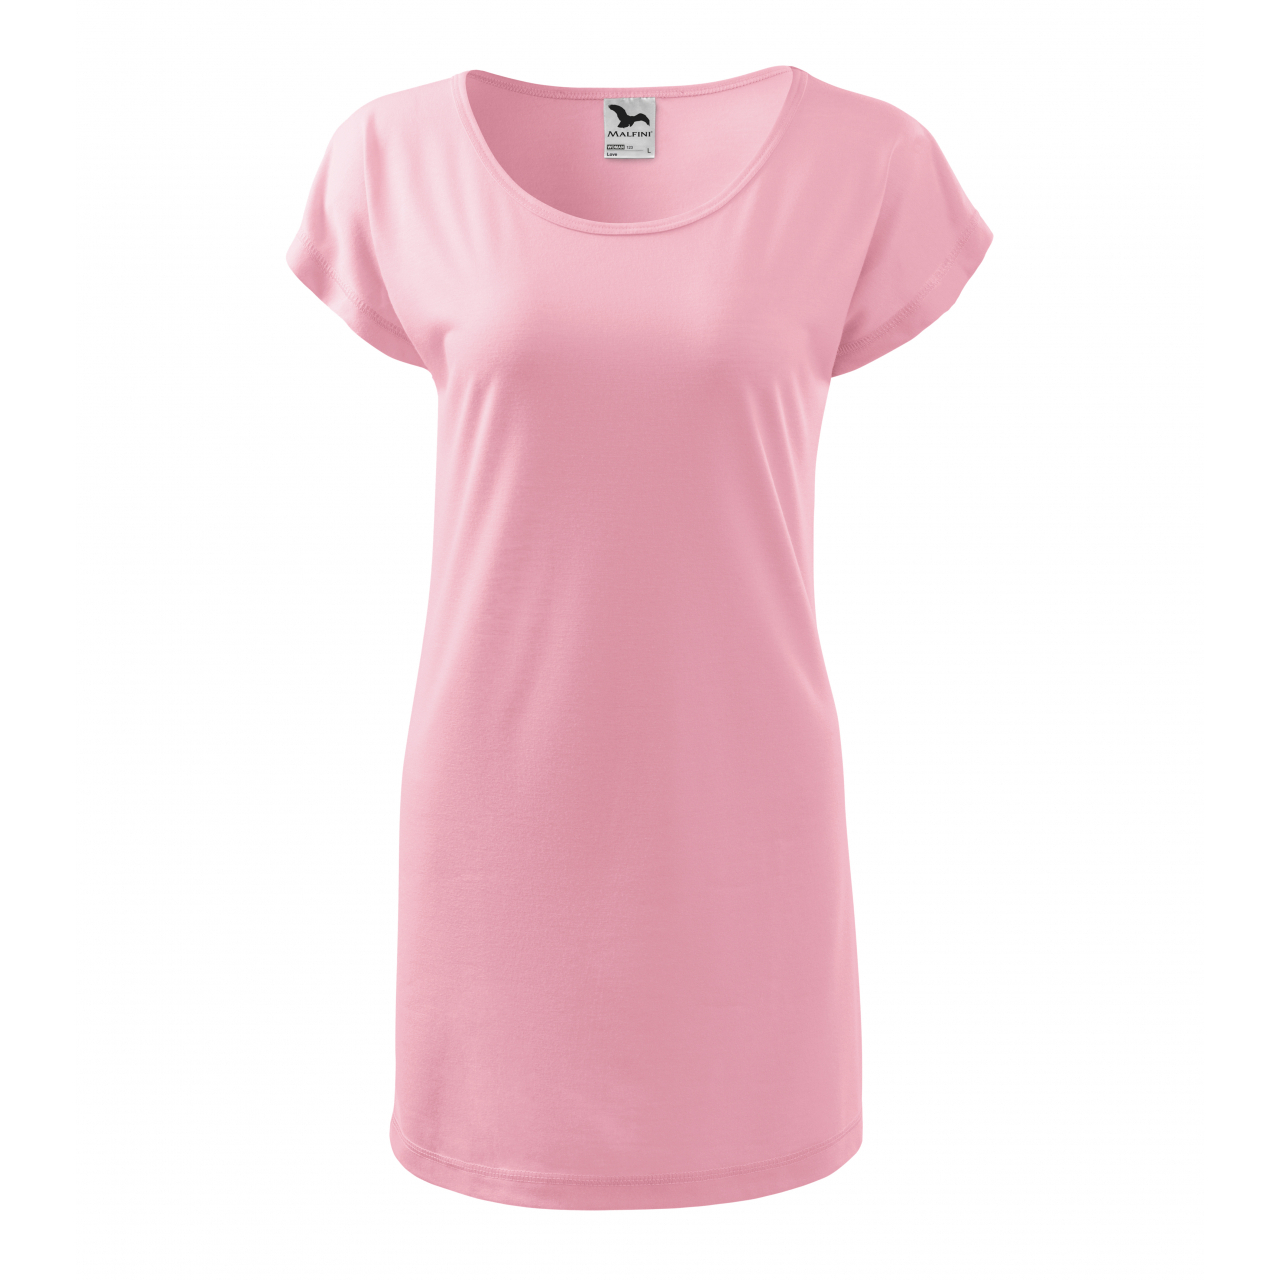 Šaty Malfini Love - světle růžové, XL